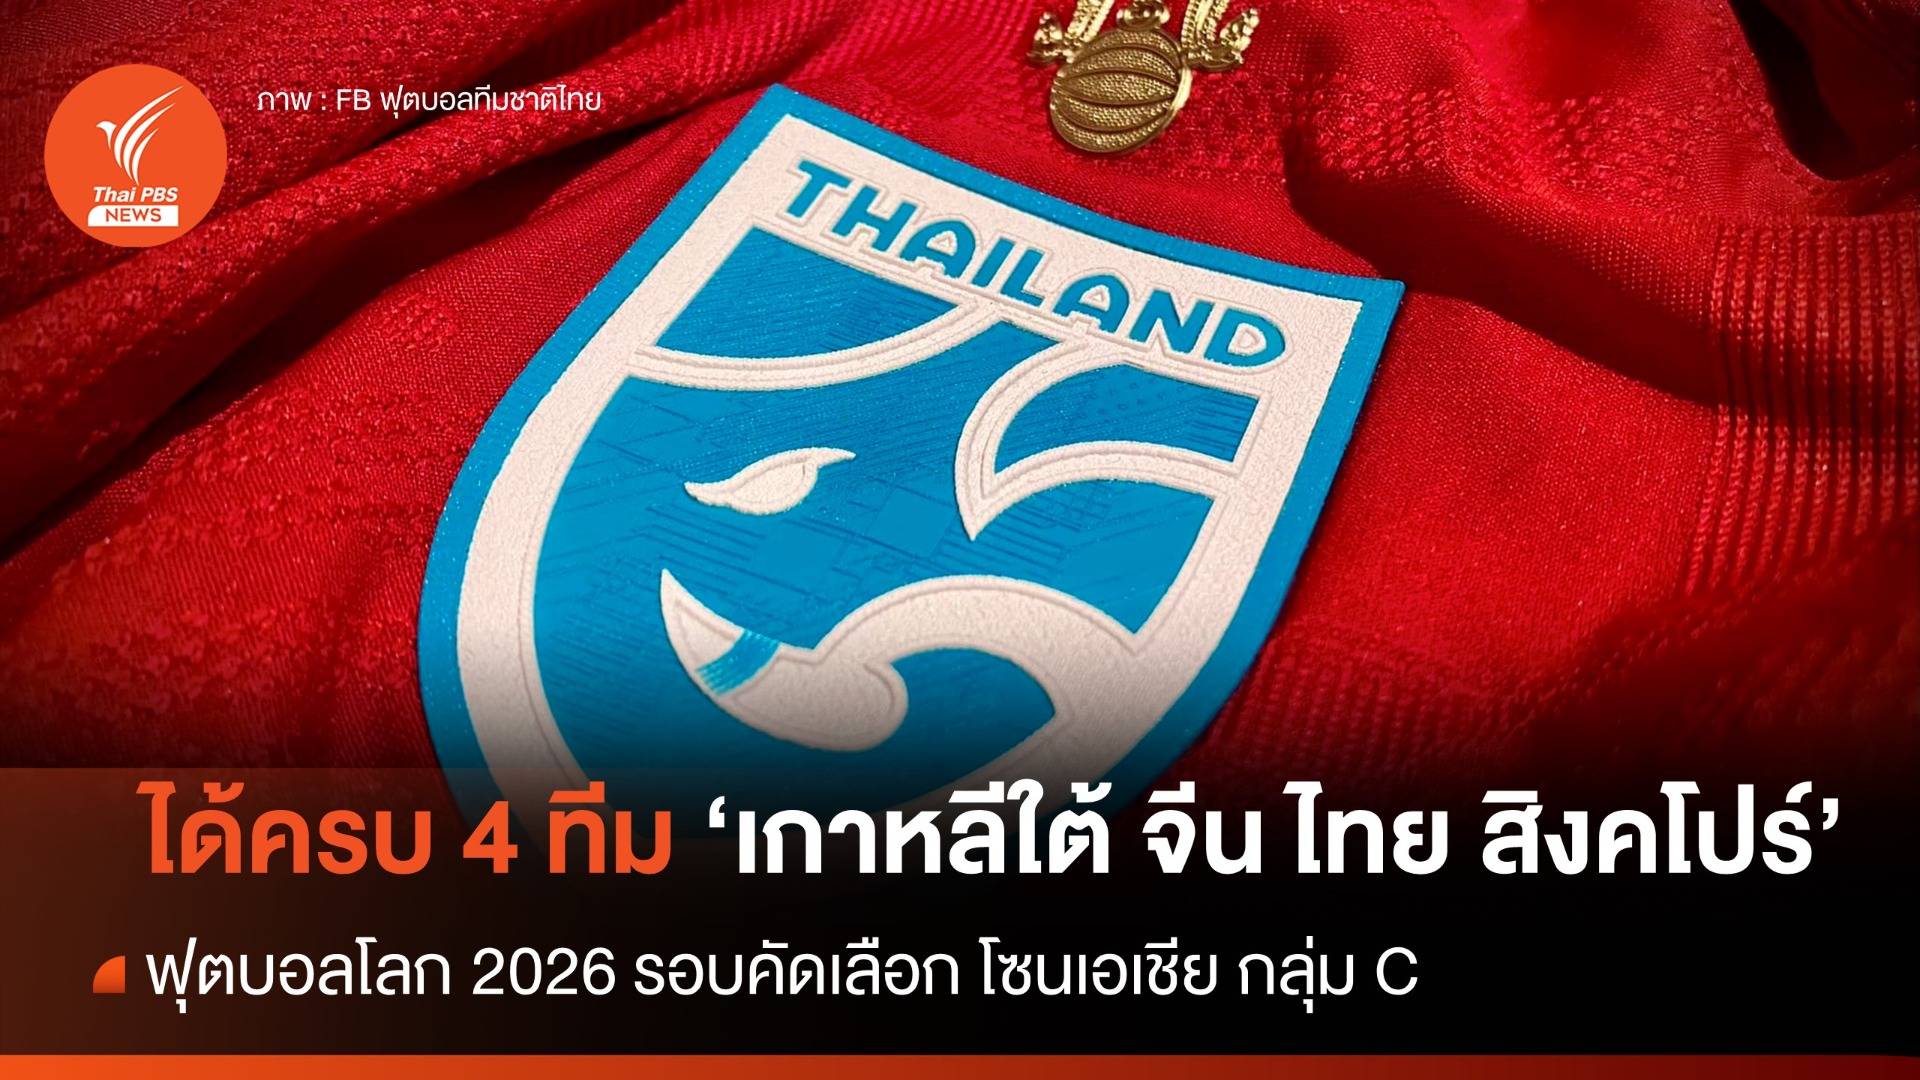 ฟุตบอลโลก 2026 รอบคัดเลือก โซนเอเชีย กลุ่ม C ได้ครบ 4 ทีม 